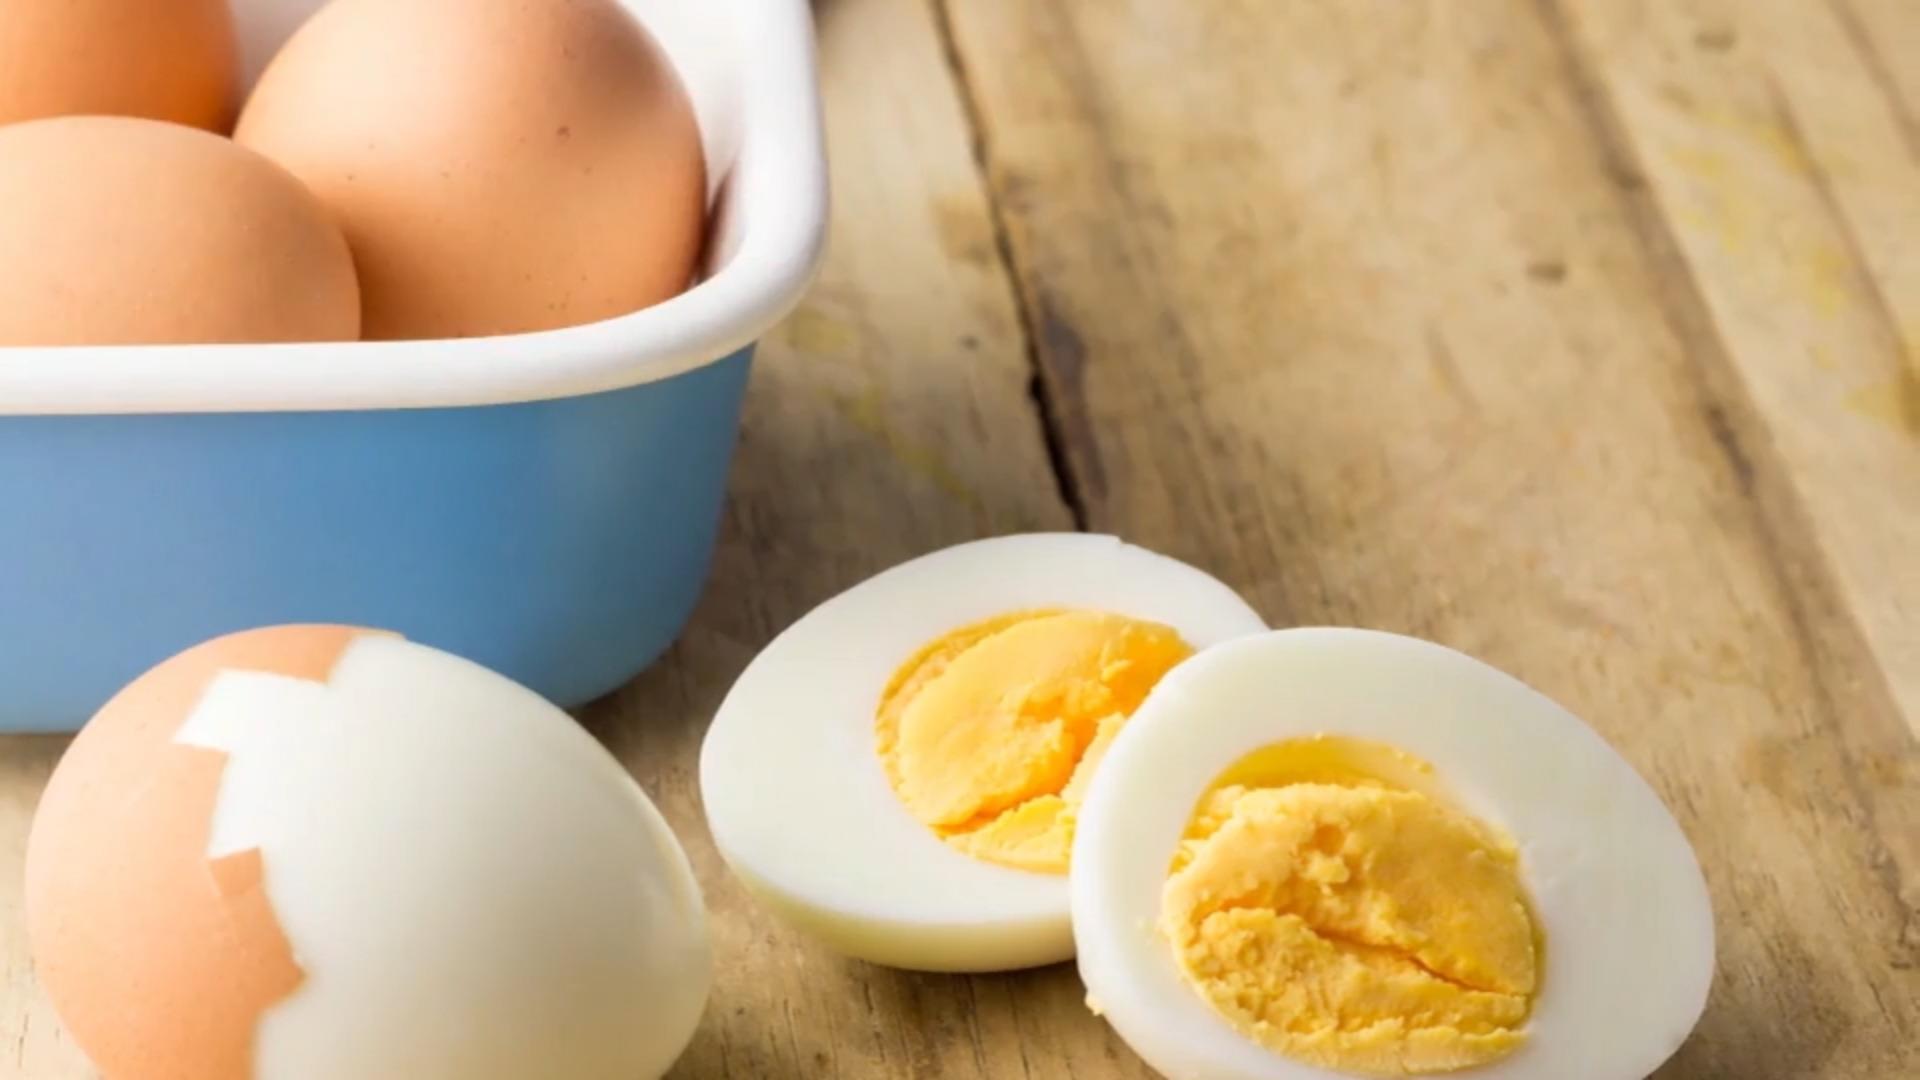 Siete ideas: huevos duros con una diferencia y esto proporciona variedad